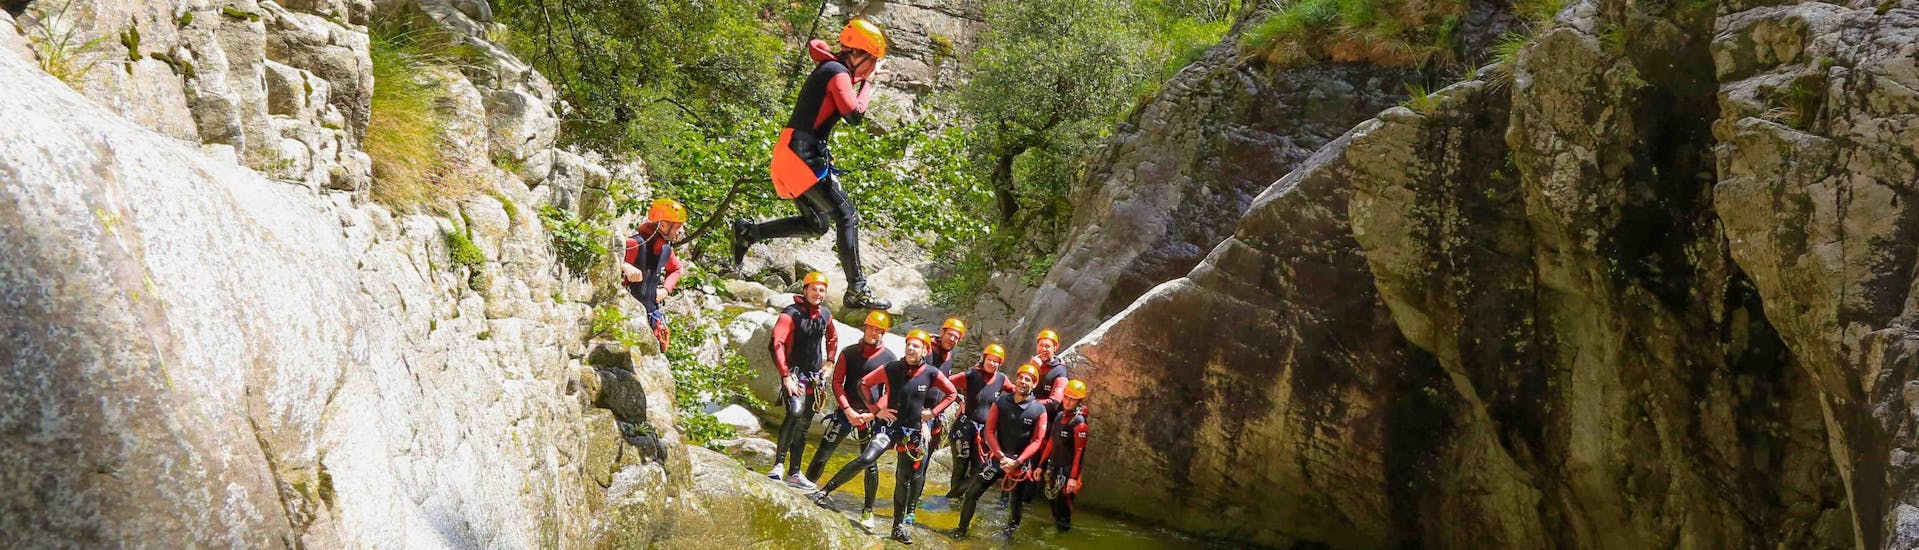 Un touriste saute dans le canyon de Zoicu lors de son activité canyoning pour les familles avec reves de cimes.